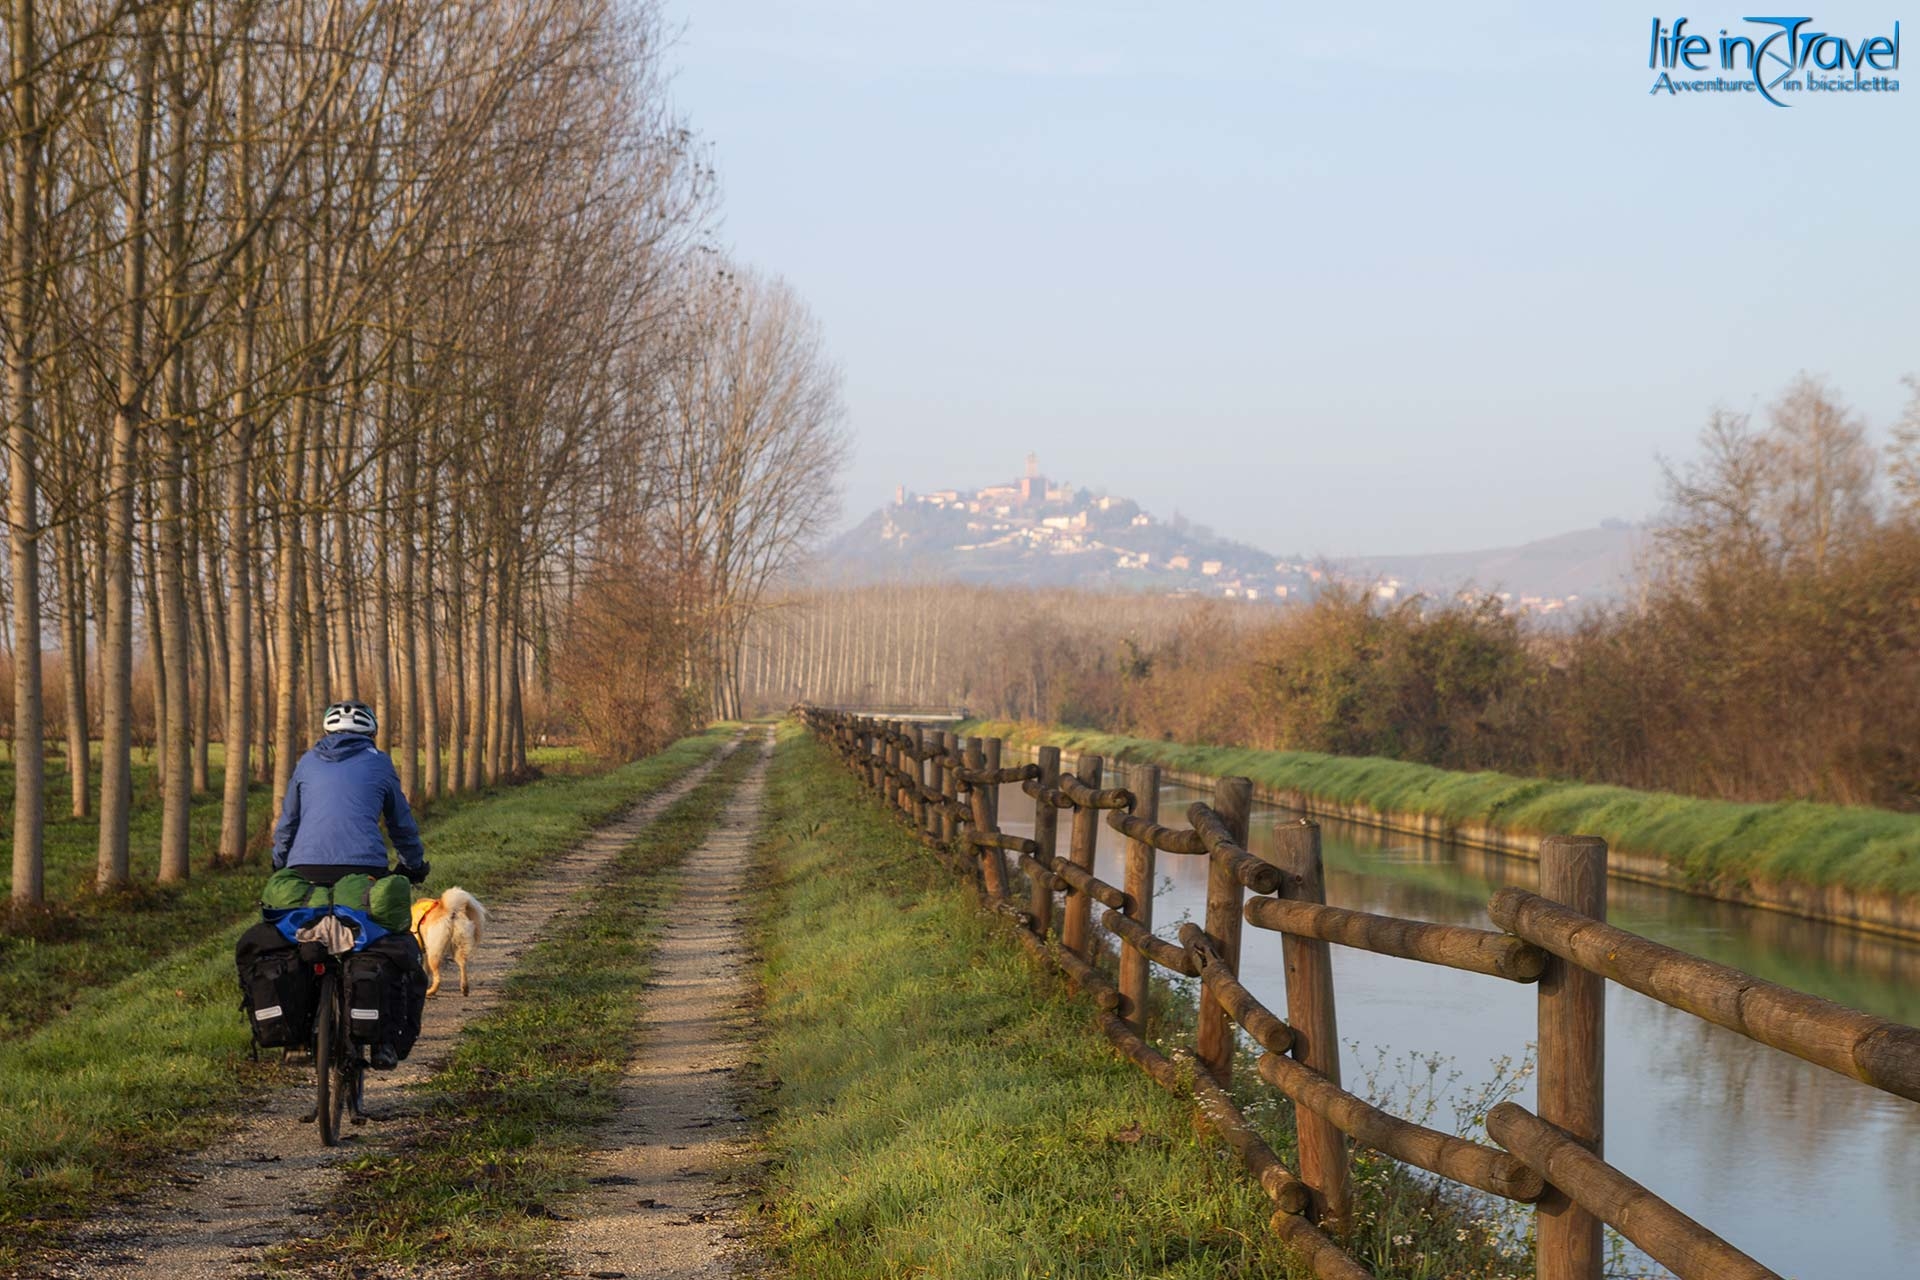 Monferrato, Langhe e Roero in bicicletta